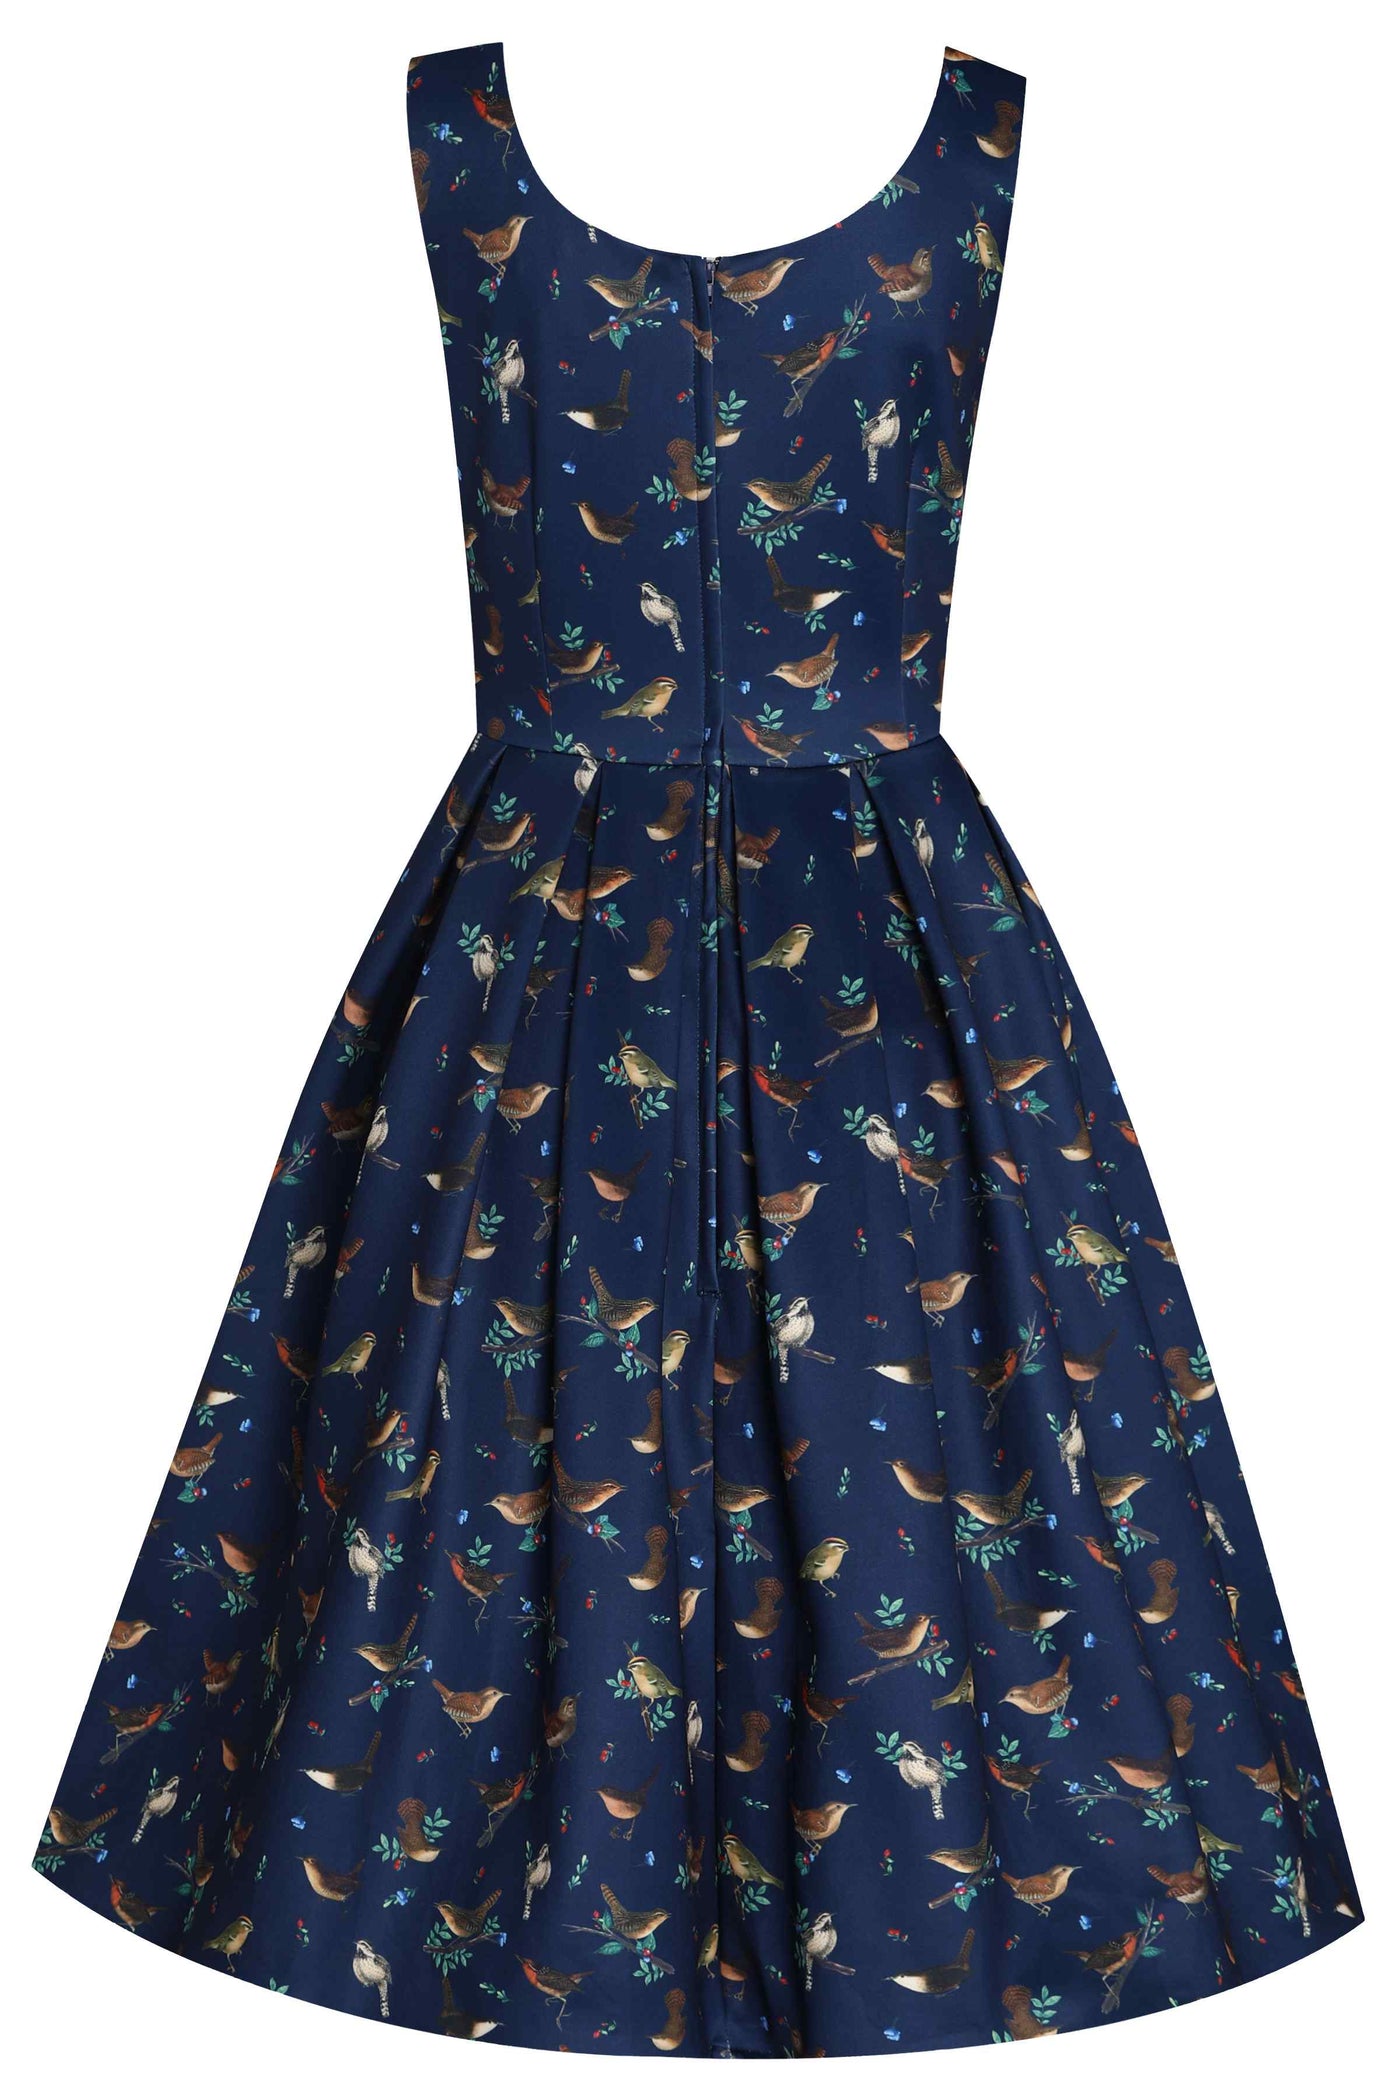 Forest birds in navy blue swing dress